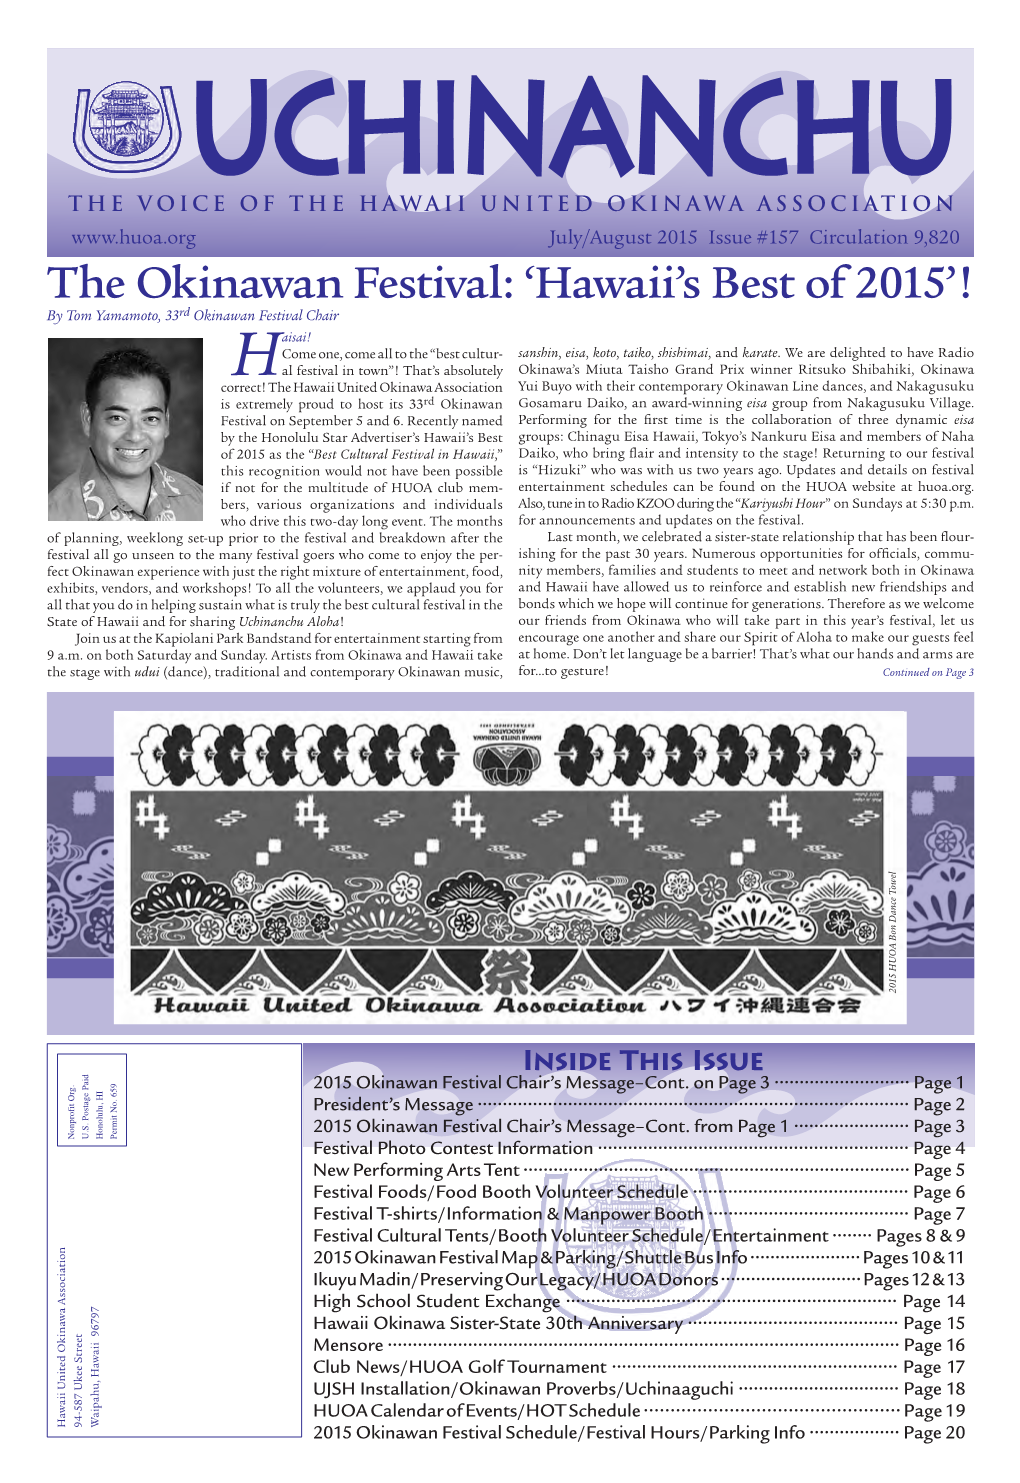 The Okinawan Festival